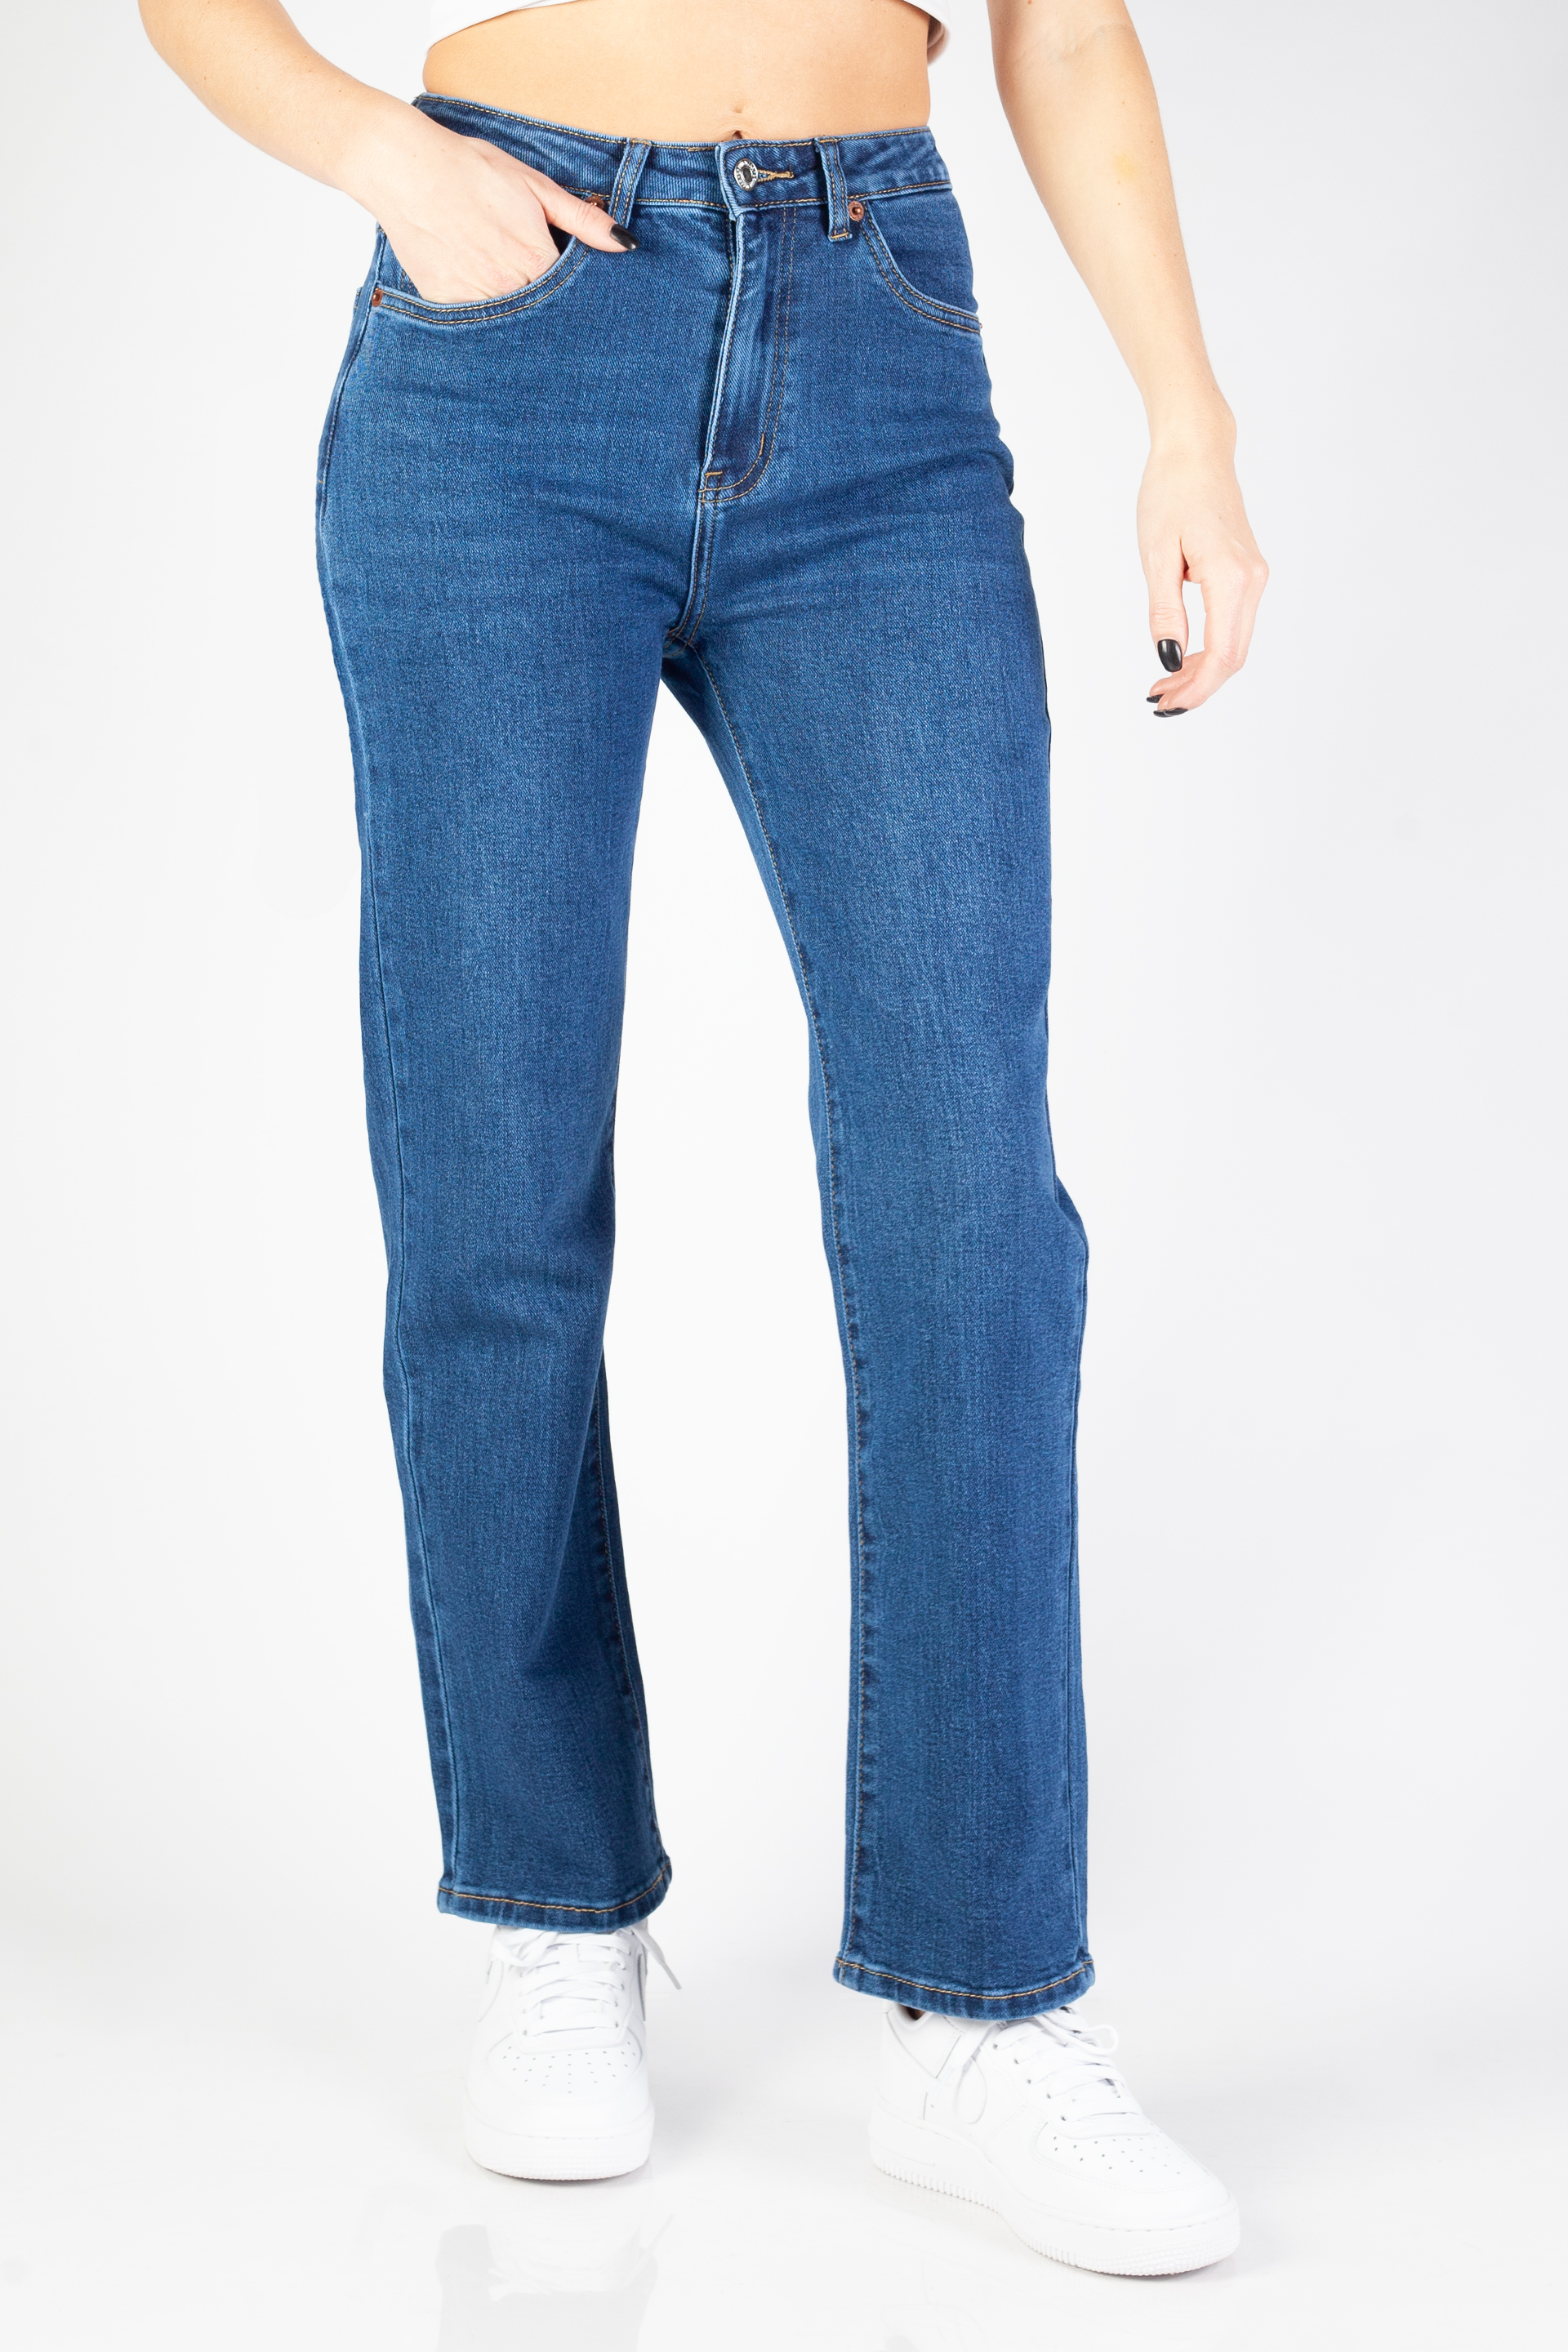 Jeans VS MISS VS7718